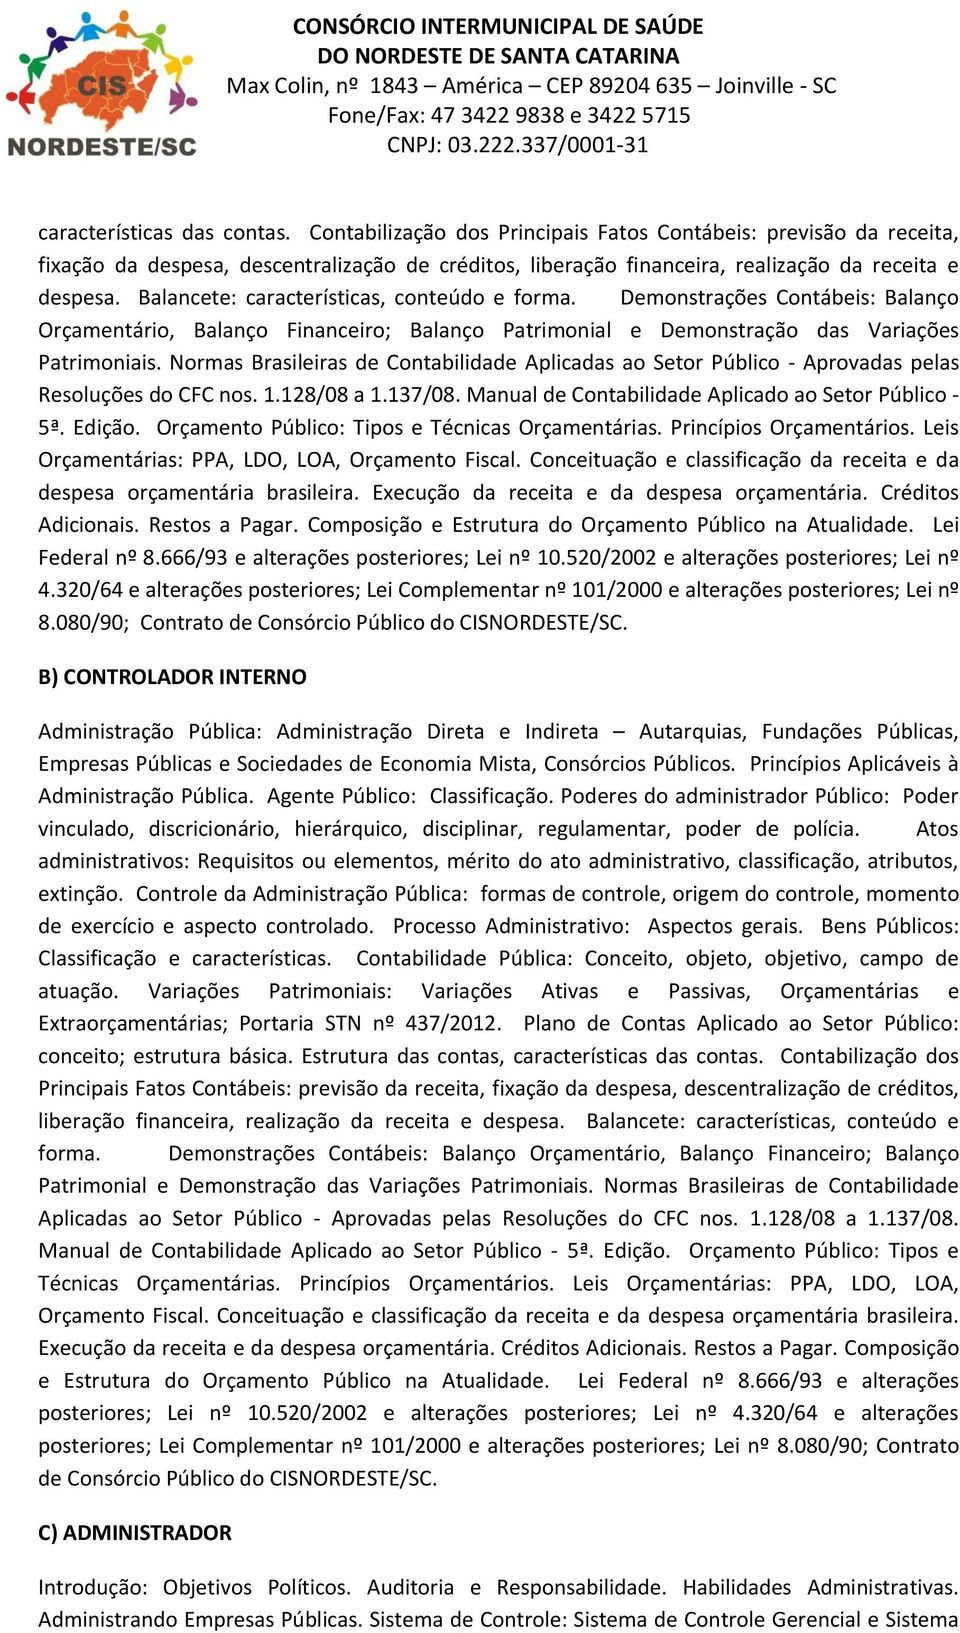 Normas Brasileiras de Contabilidade Aplicadas ao Setor Público - Aprovadas pelas Resoluções do CFC nos. 1.128/08 a 1.137/08. Manual de Contabilidade Aplicado ao Setor Público - 5ª. Edição.